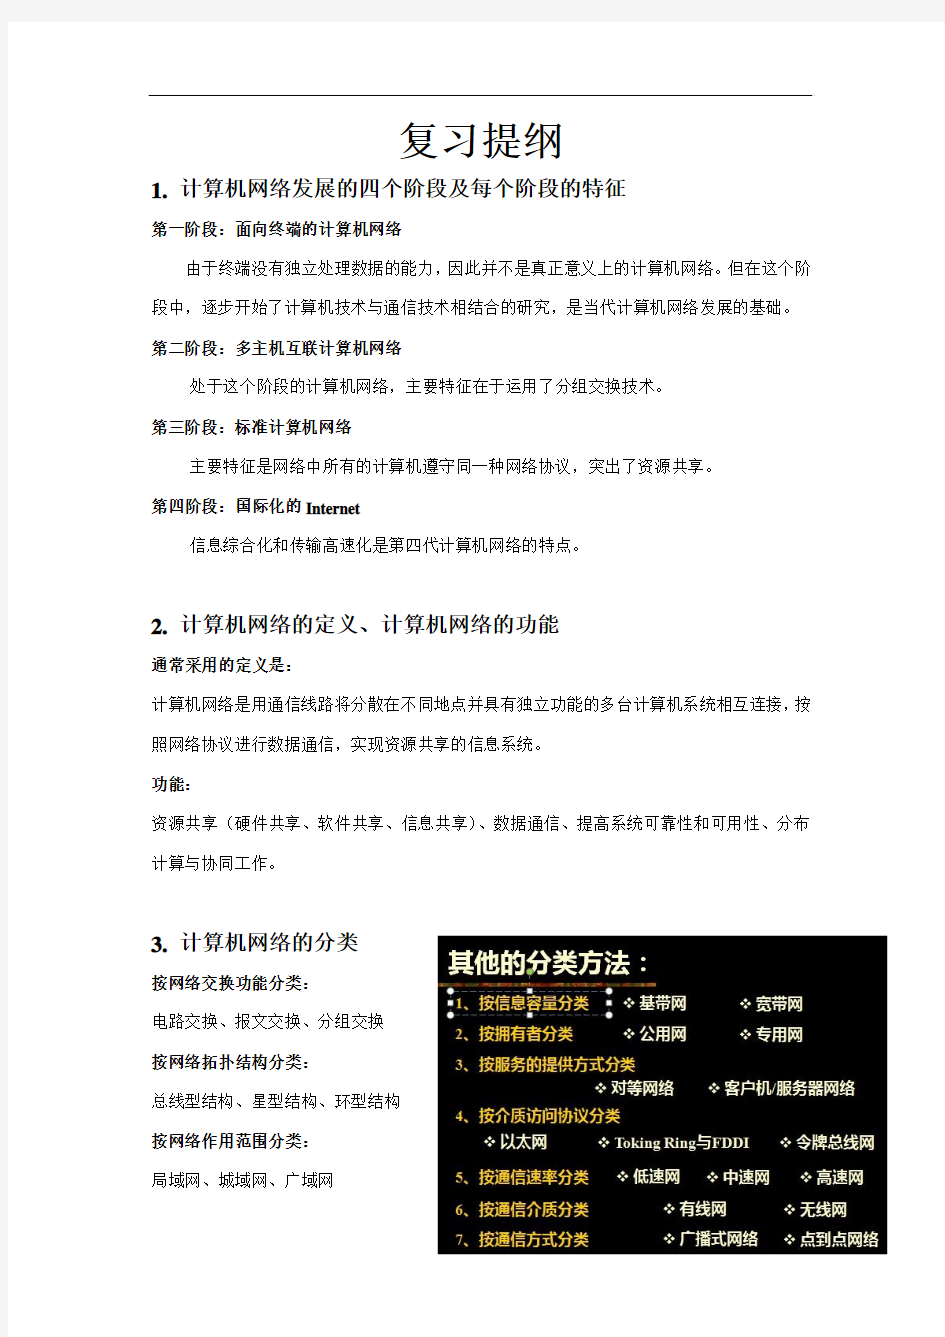 2013 北工大 计算机网络应用 复习提纲(整理版)